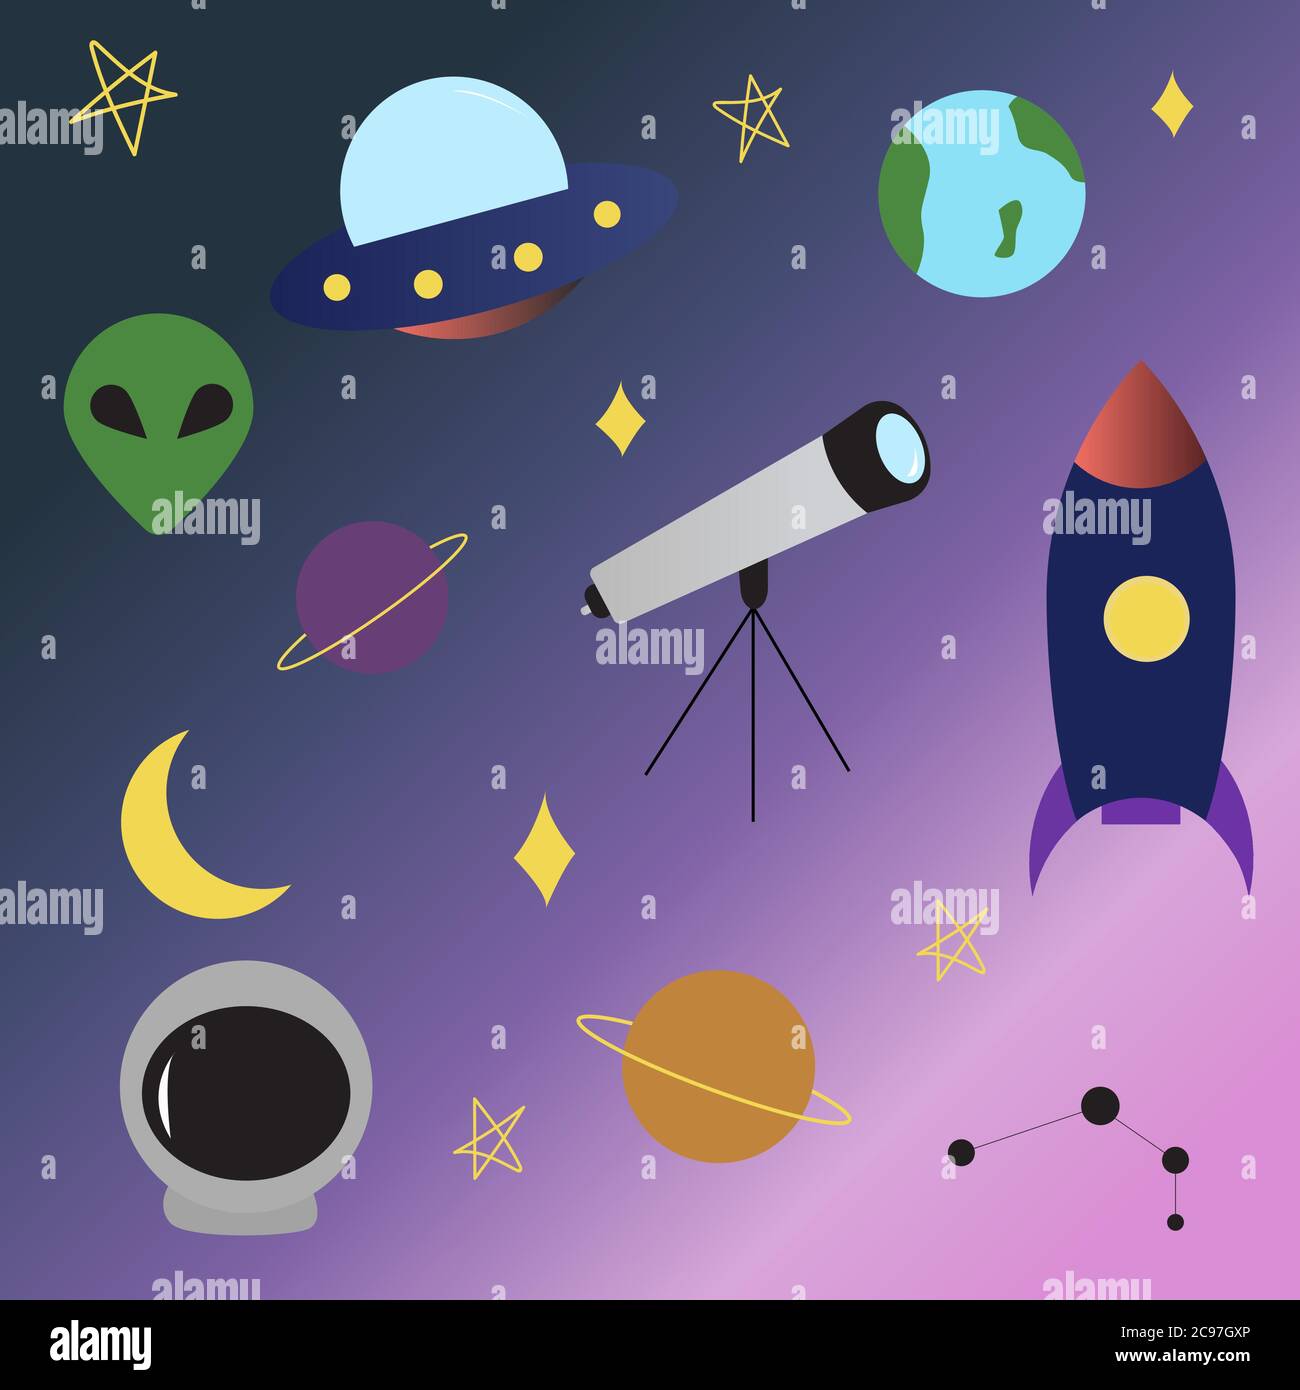 Raum UFO-Elemente setzen Rakete, Alien, Planeten, Erde, Teleskop, UFO, Konstellation, Sterne Mond Raumschiff in flacher Cartoon-Stil Stock Vektor